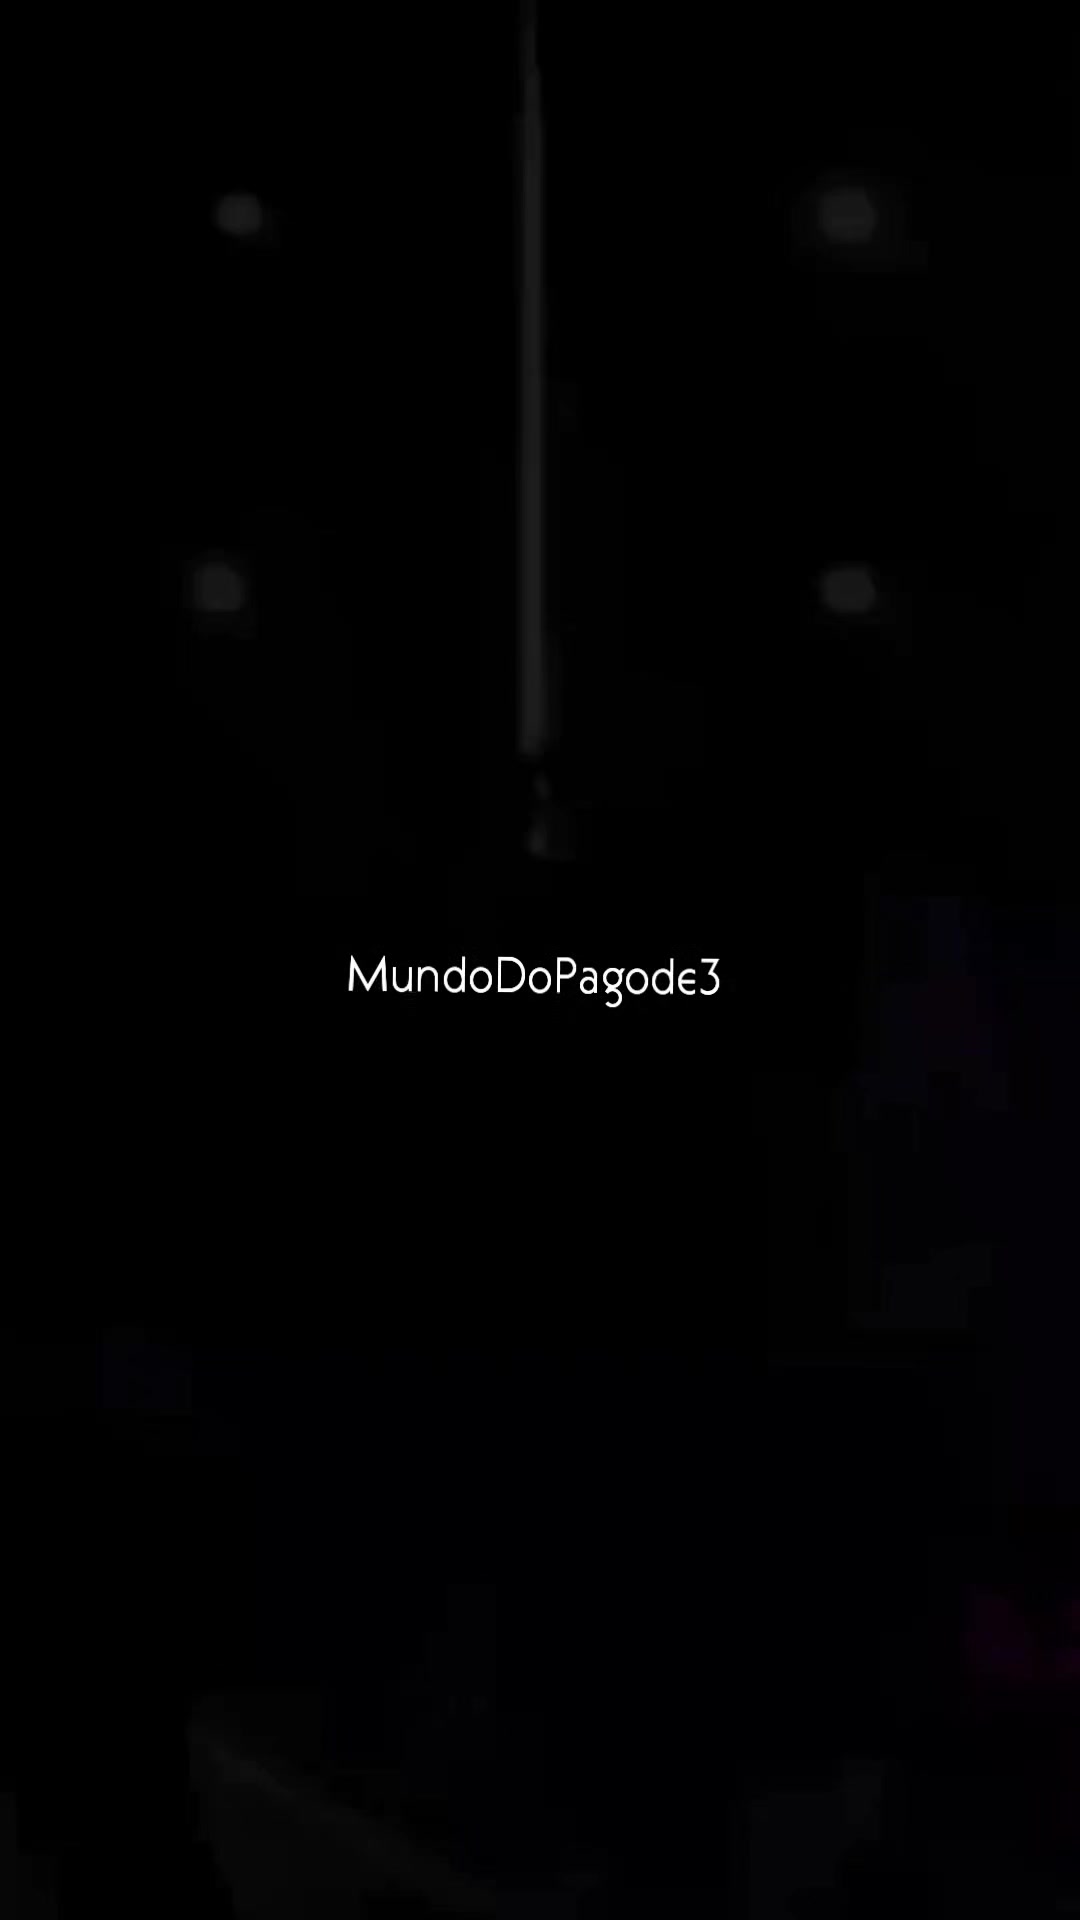 @MundoDoPagode